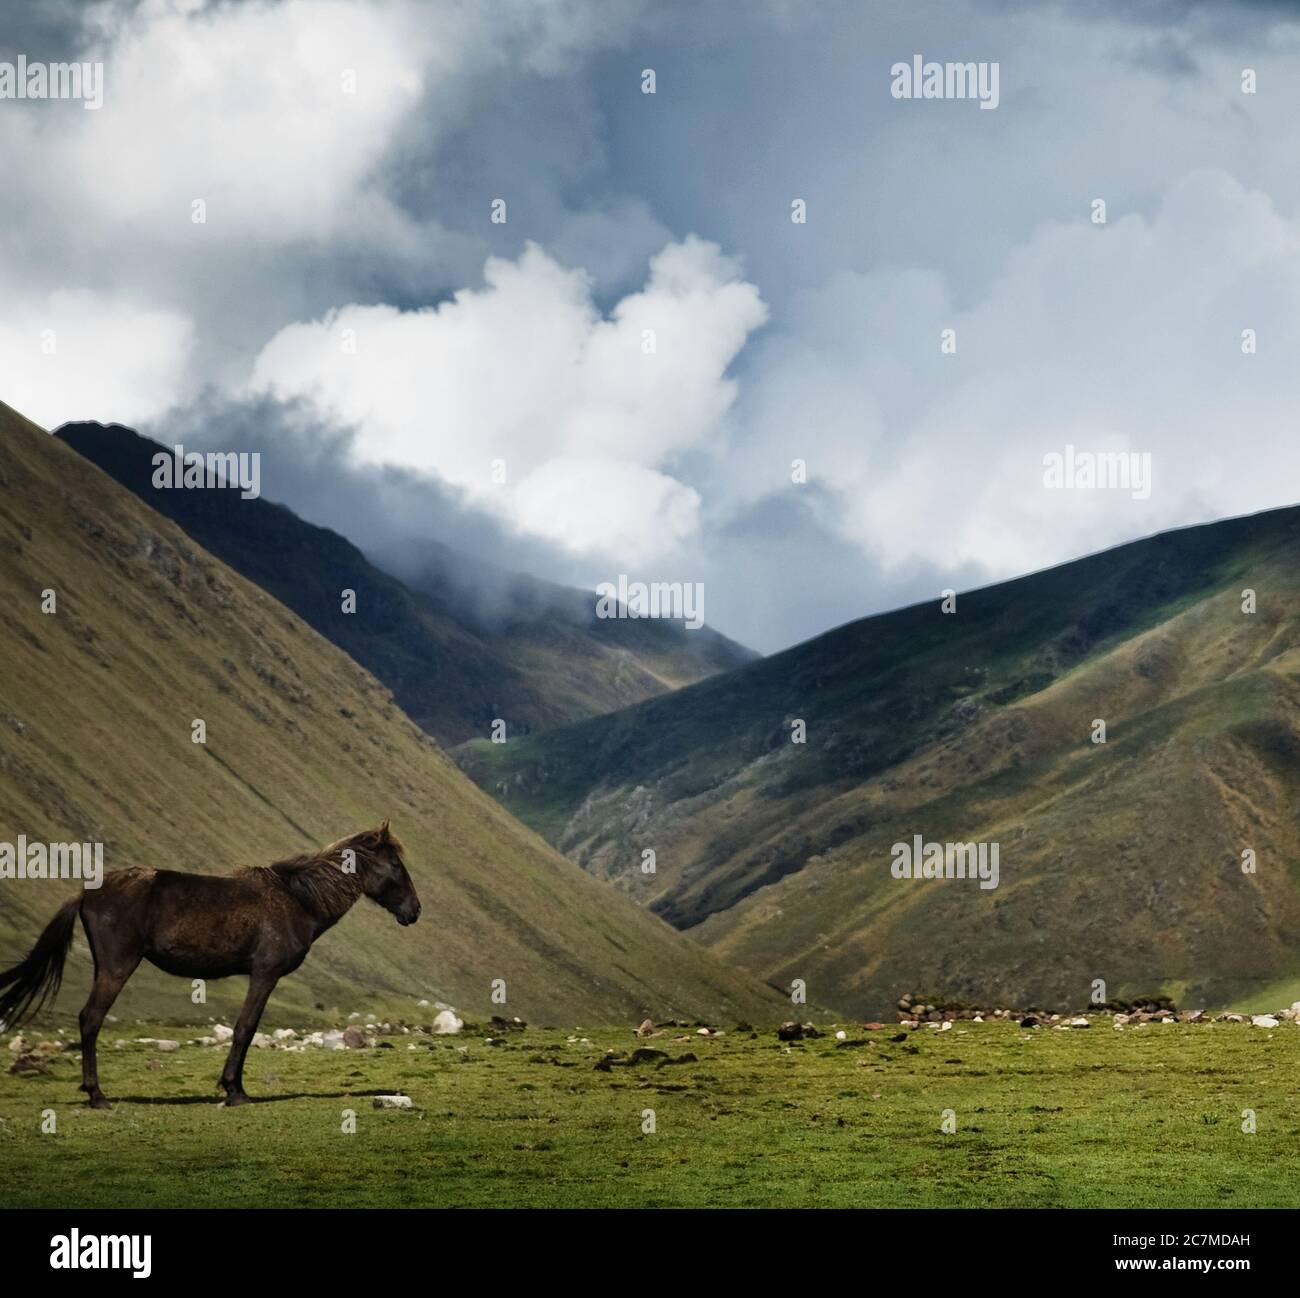 Pferd in den Bergen, Chaulacocha Vilage, Anden, Peru, Südamerika Stockfoto